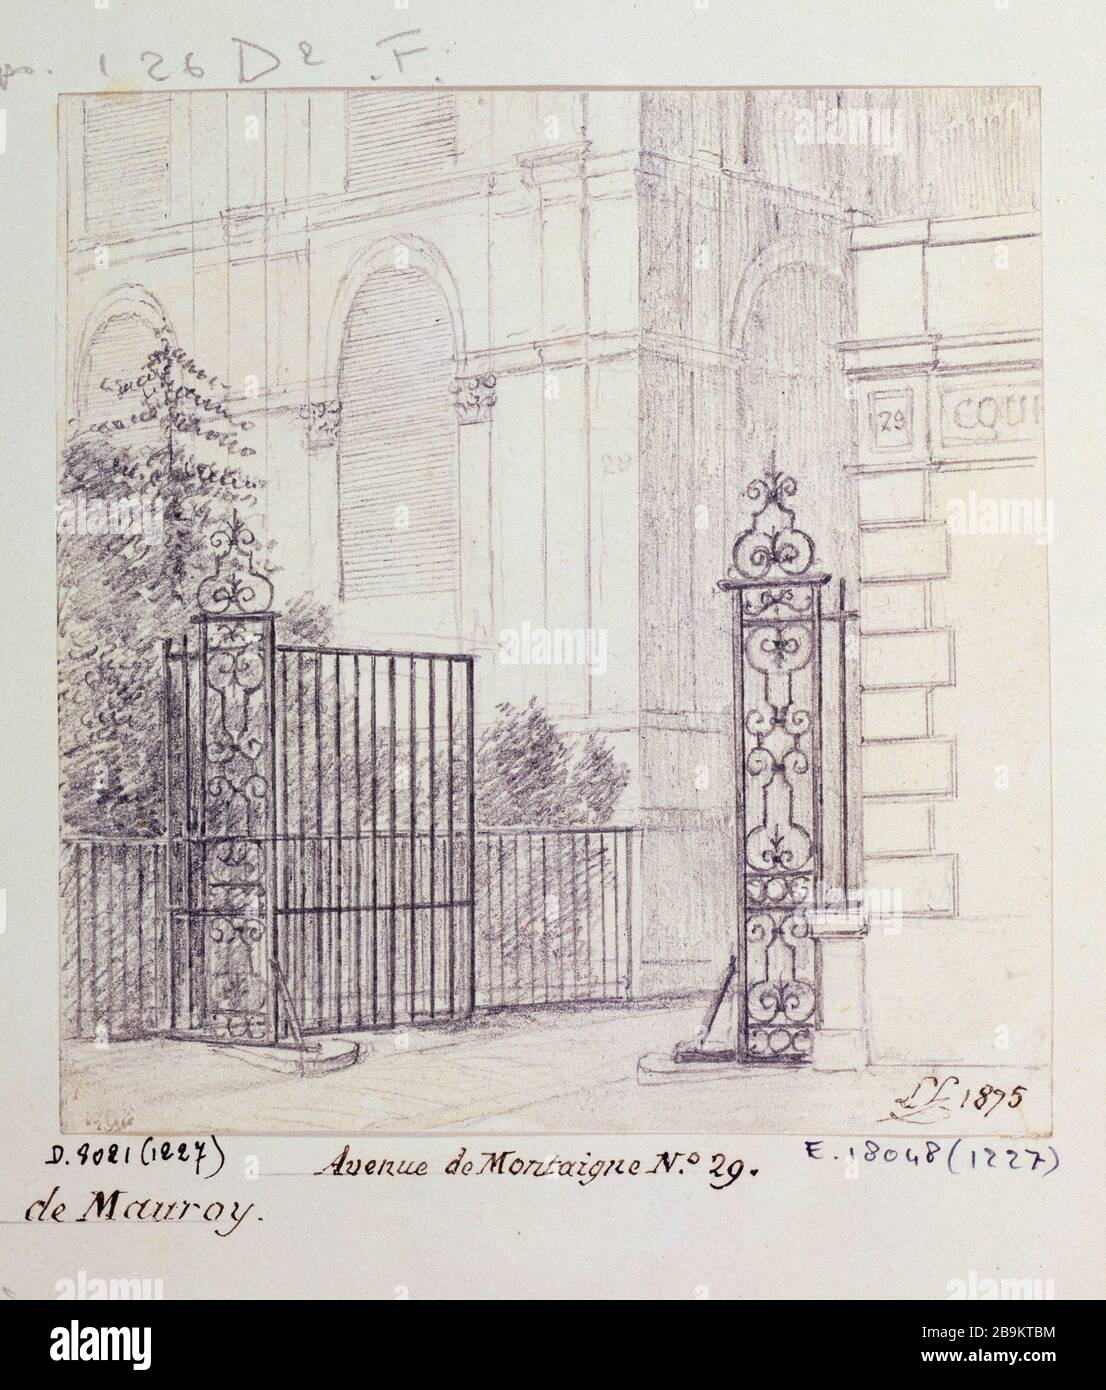 City Godot de Mauroy, 29 Avenue Montaigne, 1875 Léon Leymonnerye (1803-1879). Cité Godot de Mauroy, 29 avenue Montaigne. Crayon, 1875. Paris, musée Carnavalet. Stock Photo